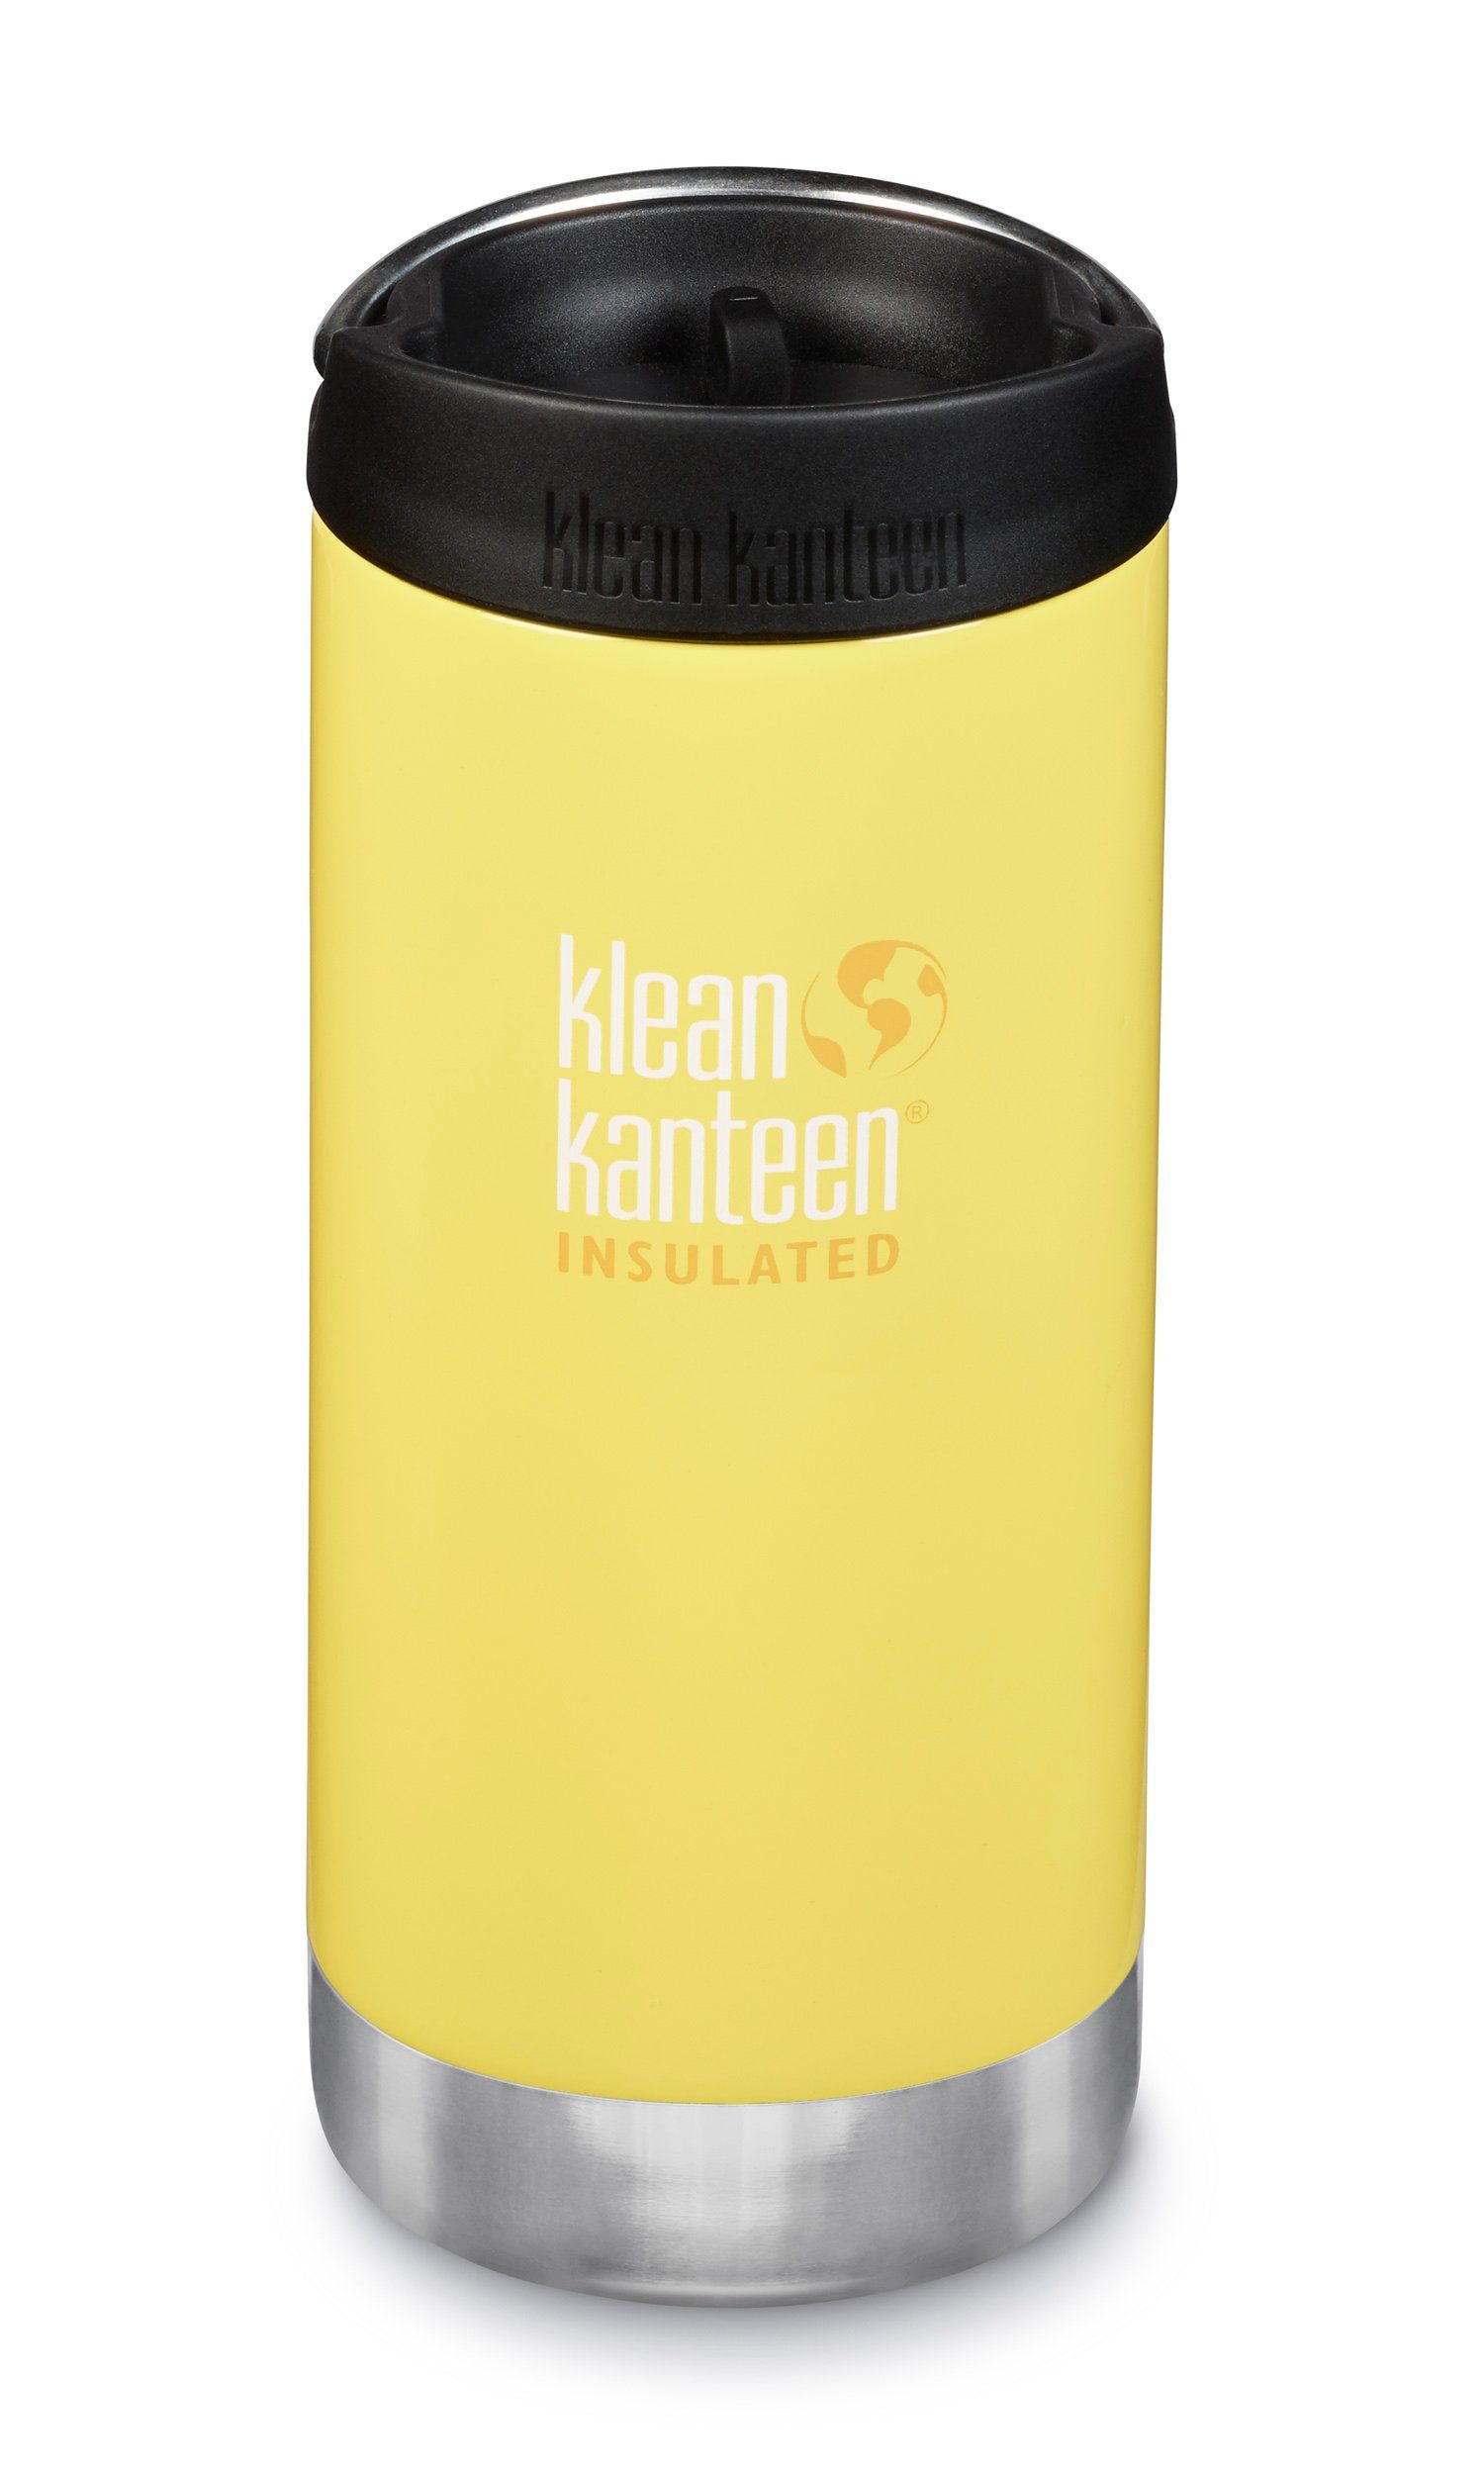 TKWide Kanteen Café Klean vakuumisoliert, Buttercup Cap mit 355ml Isolierflasche